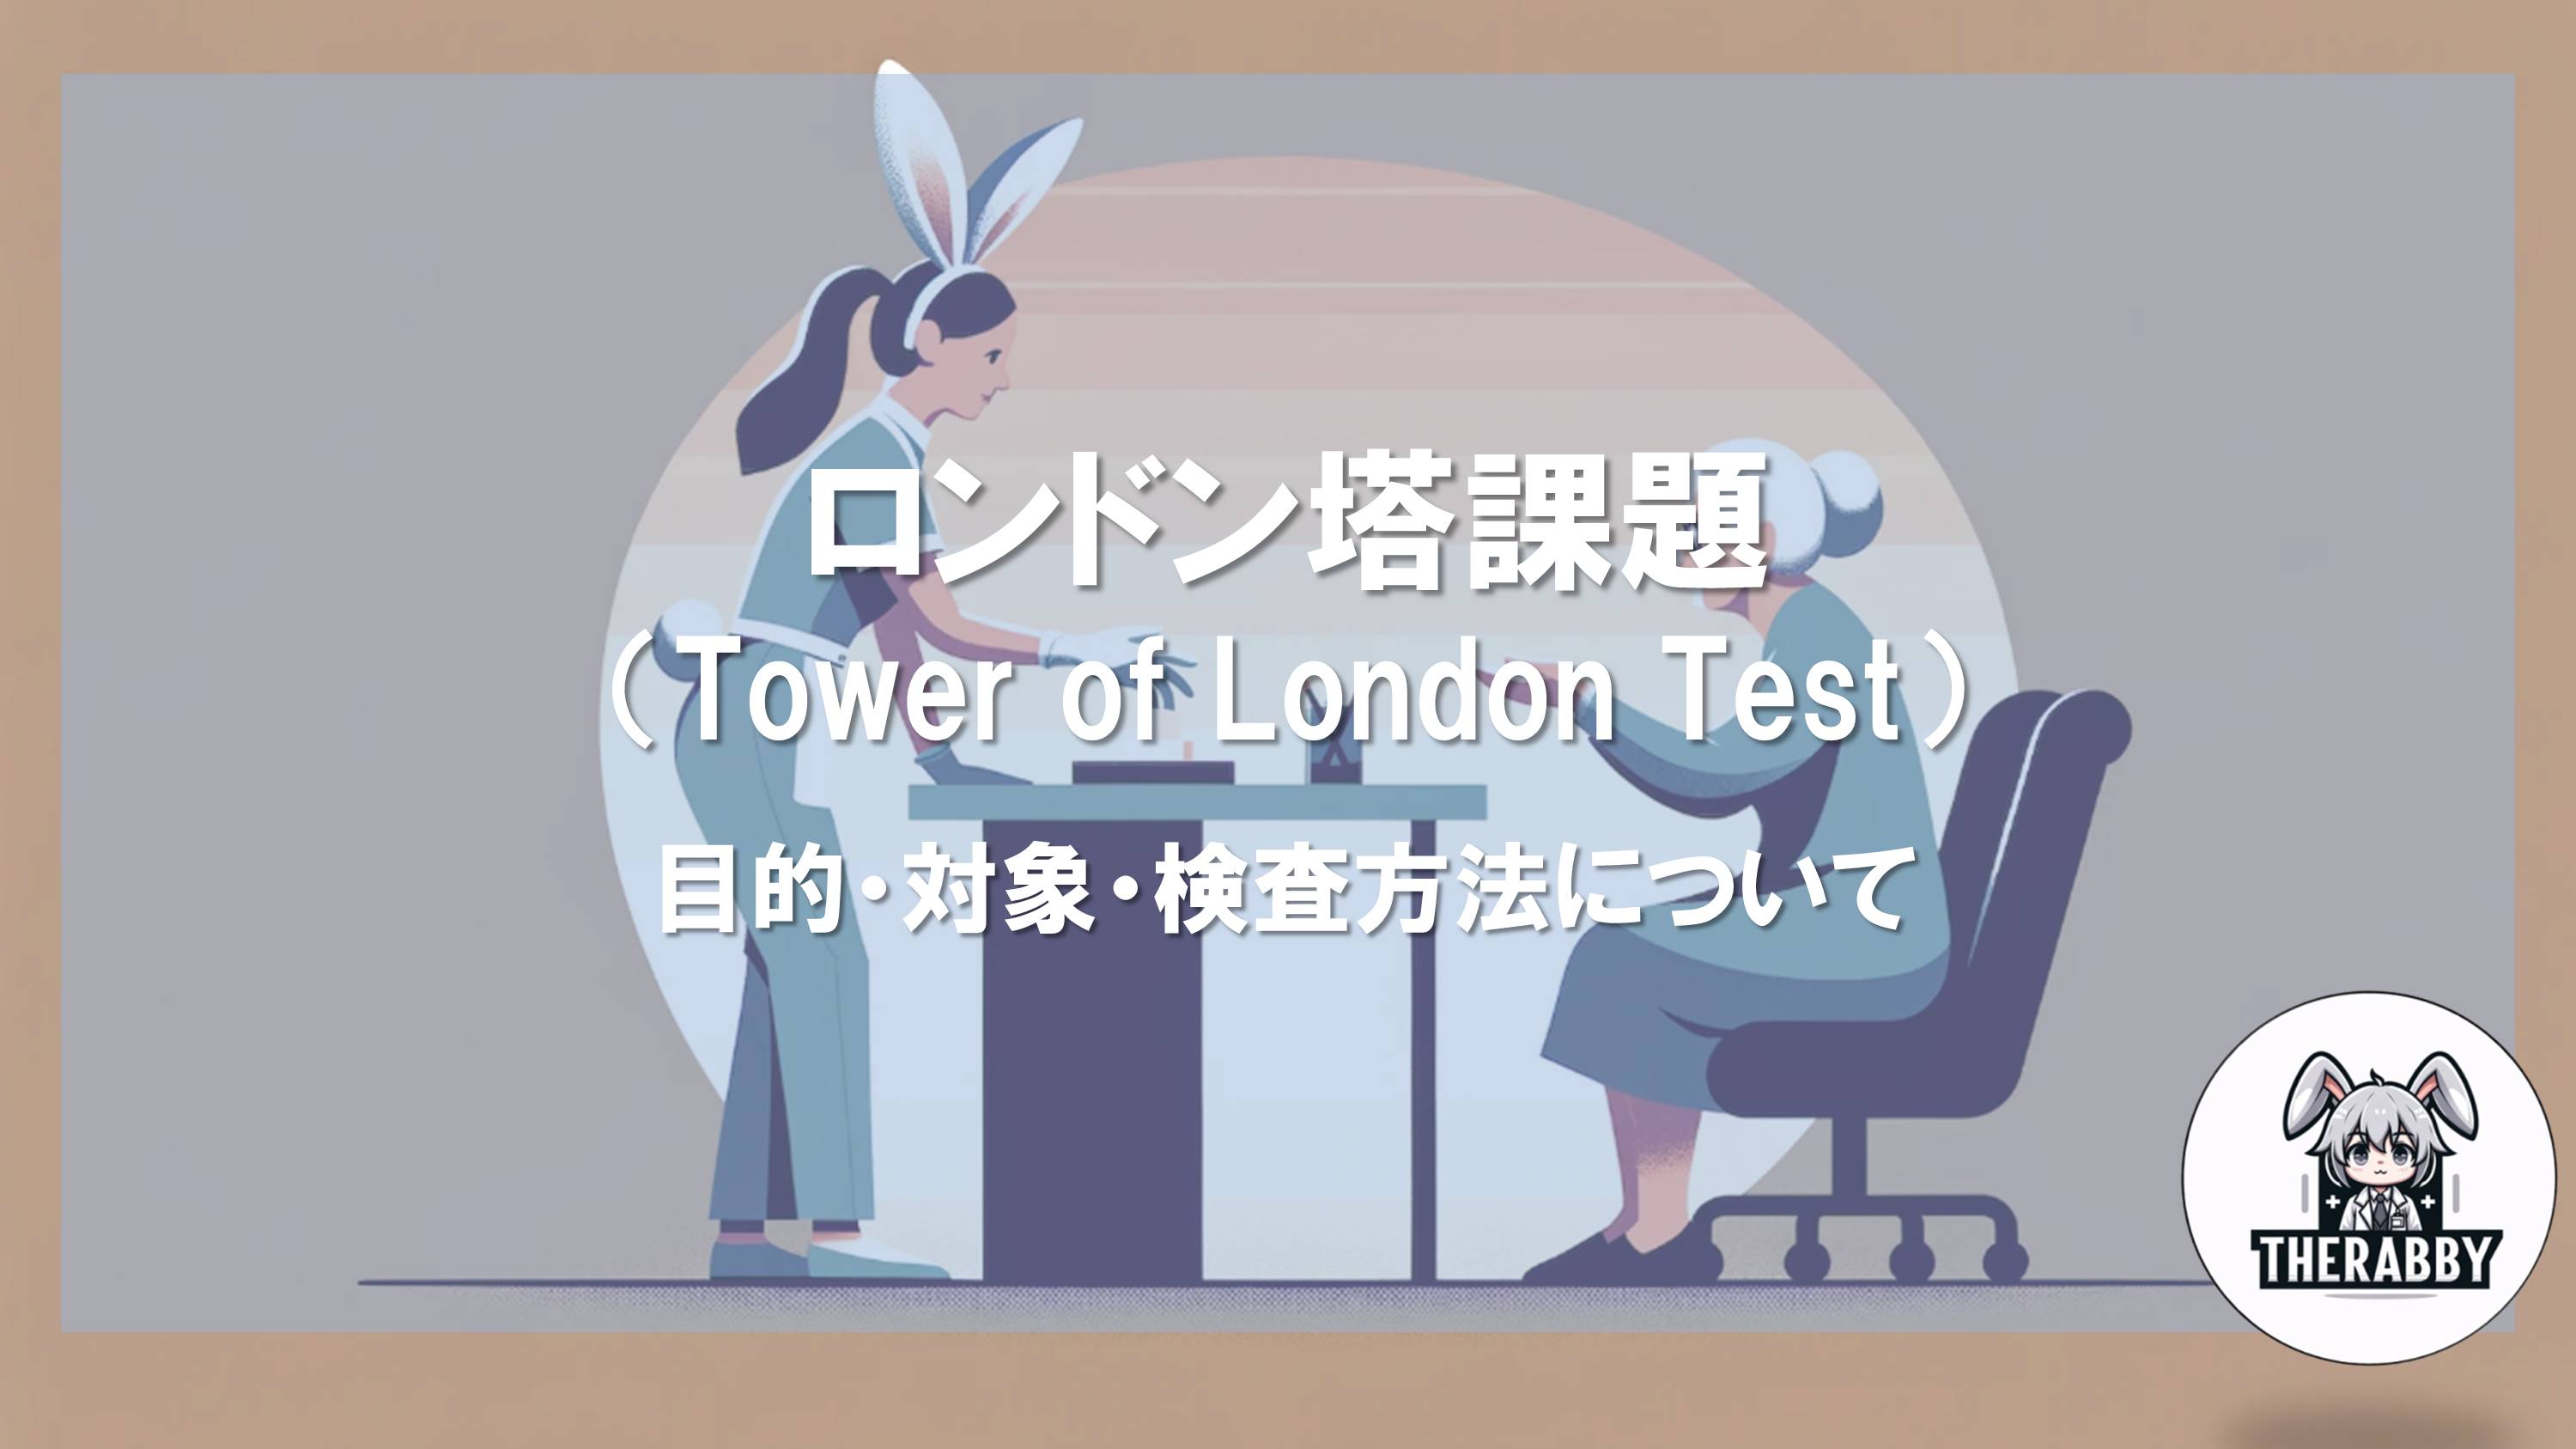 ロンドン塔課題 - 目的・対象・検査方法について